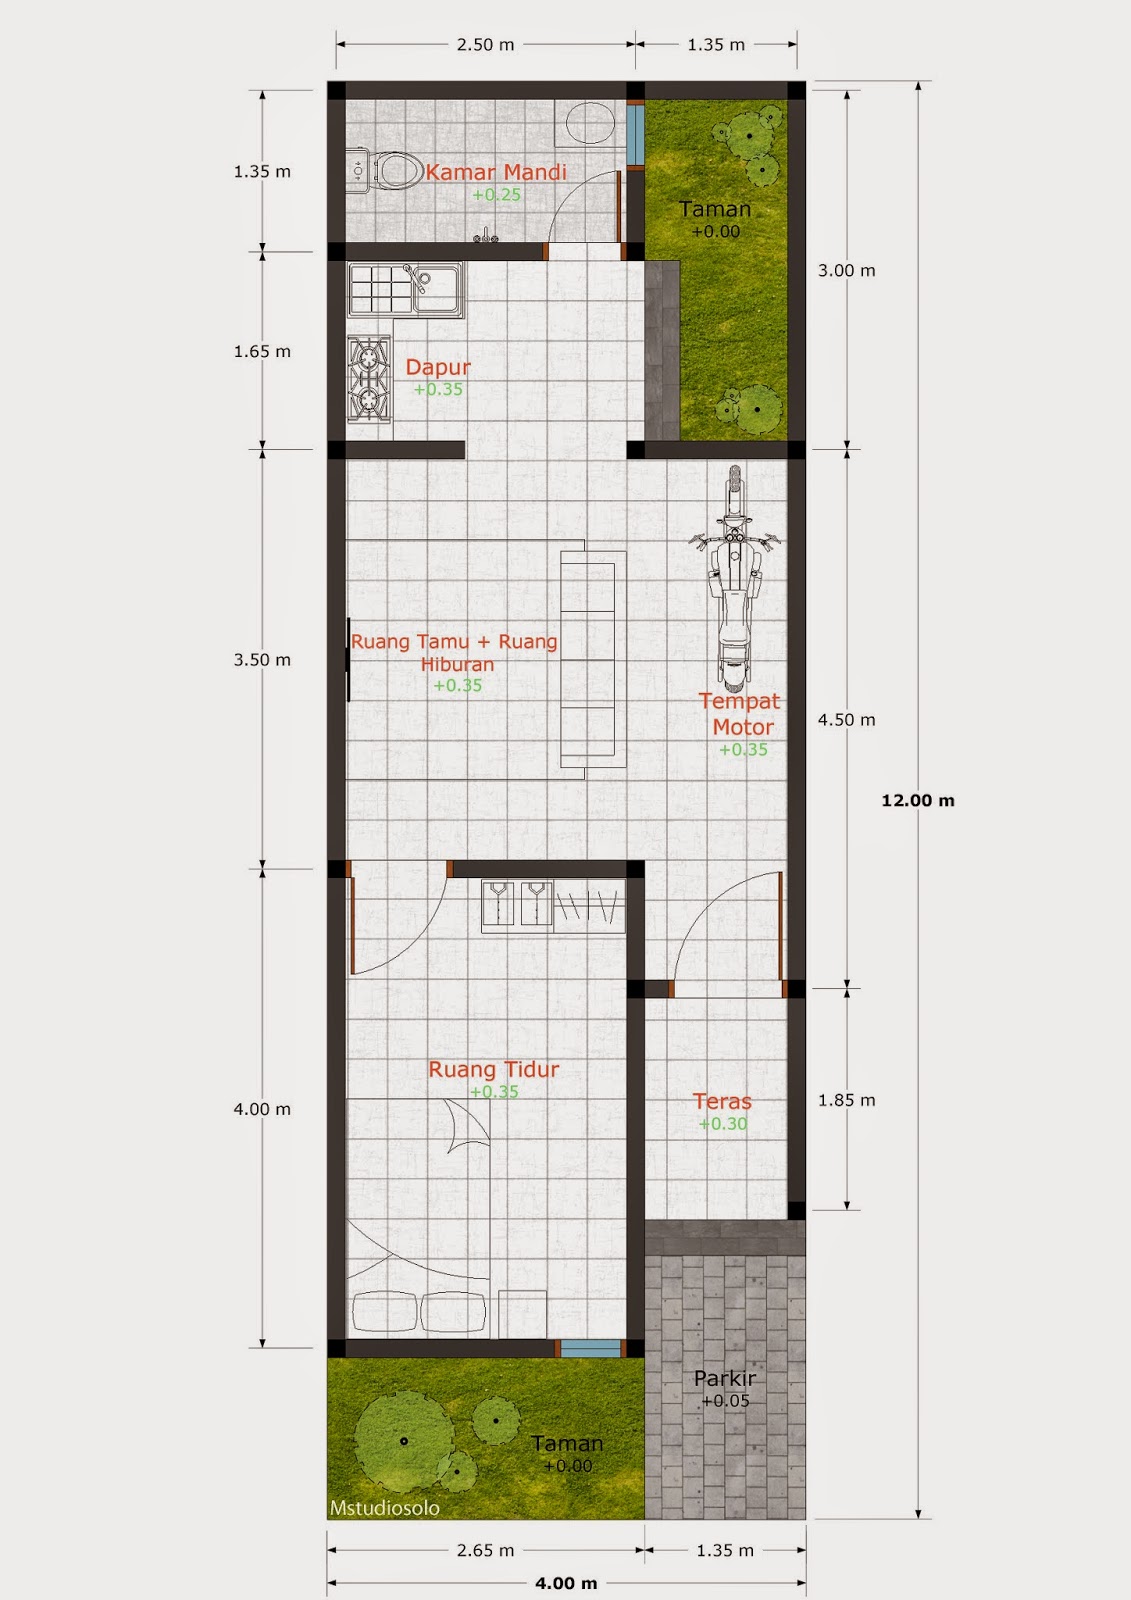 68 Desain  Rumah  Minimalis Lebar  3  Meter  Desain  Rumah  